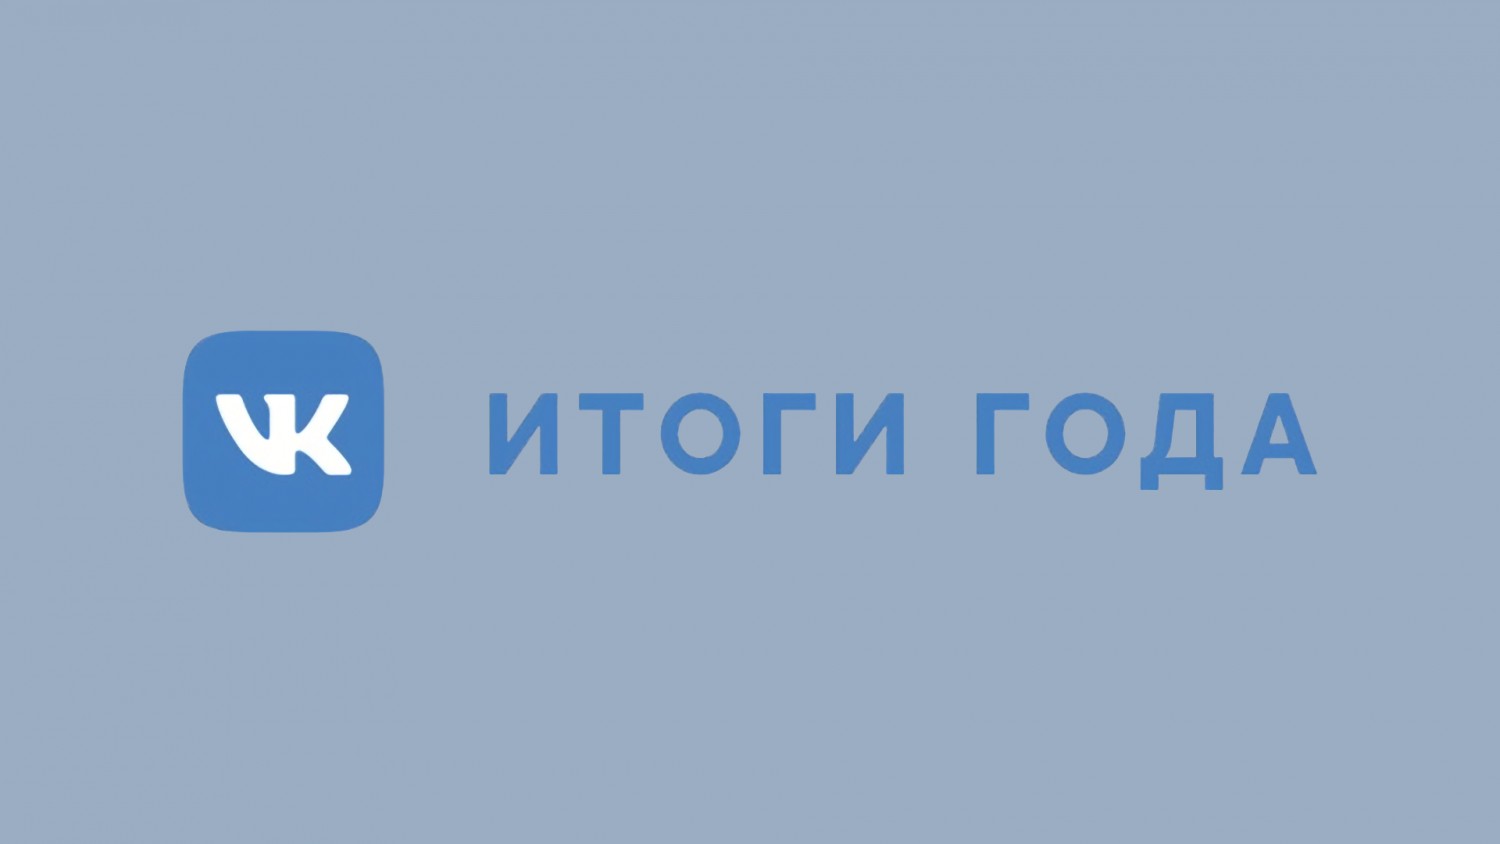 «ВКонтакте» в 2019 году: тренды и рост показателей